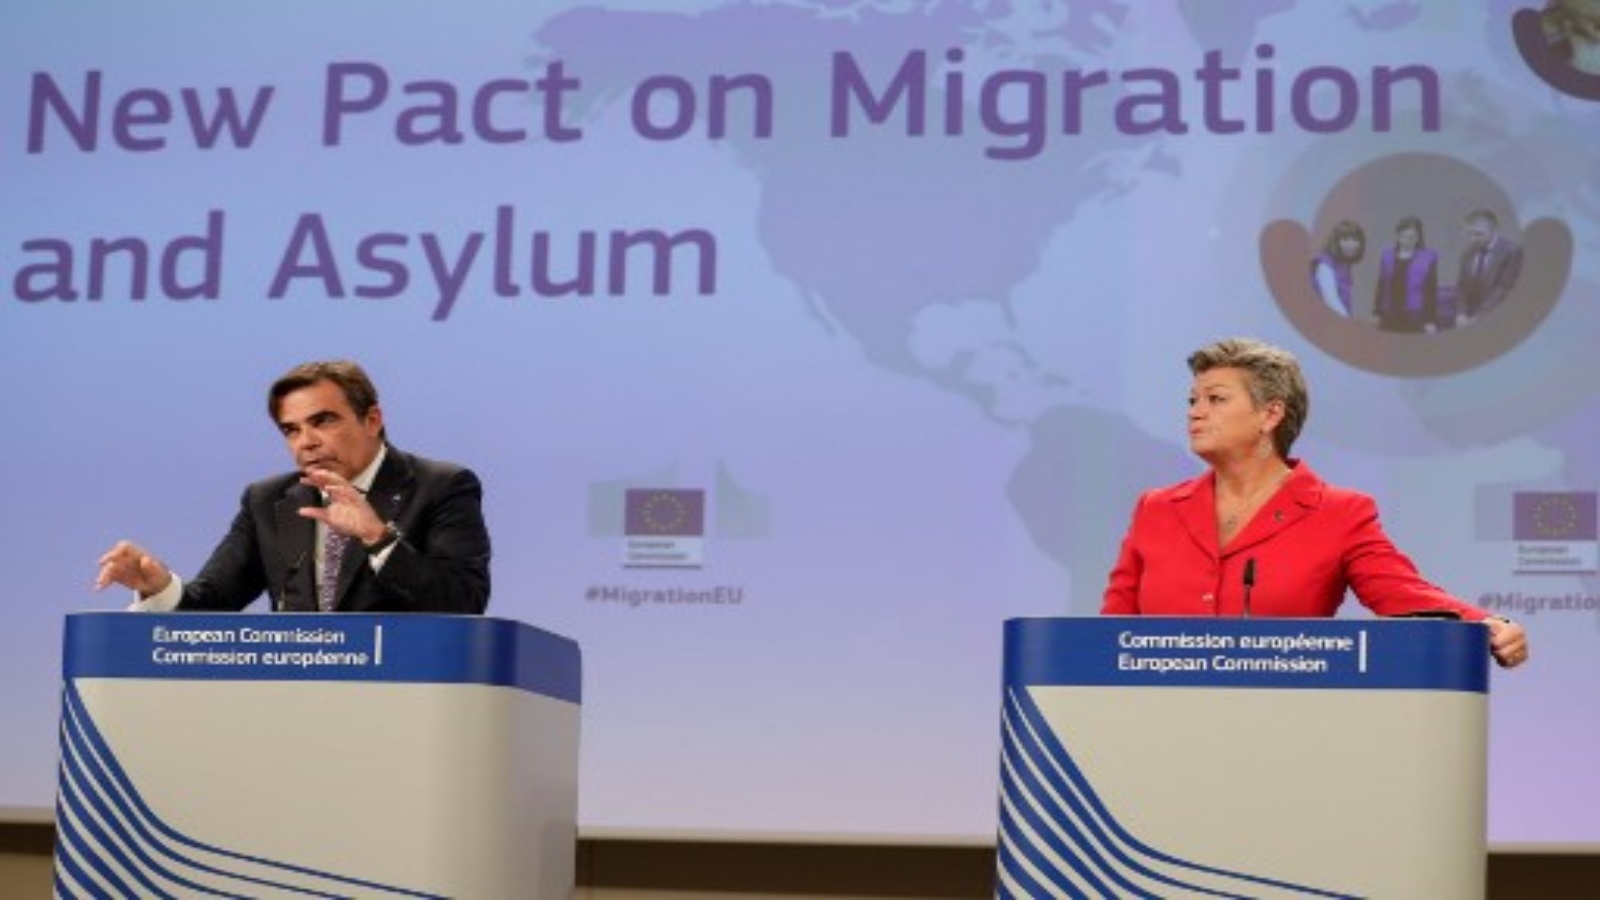 رئيسة المفوضية الأوروبية أورسولا فون دير لاين تلقي بيانًا بشأن الميثاق الجديد للهجرة واللجوء في المفوضية الأوروبية في بروكسل ، في 23 سبتمبر 2020